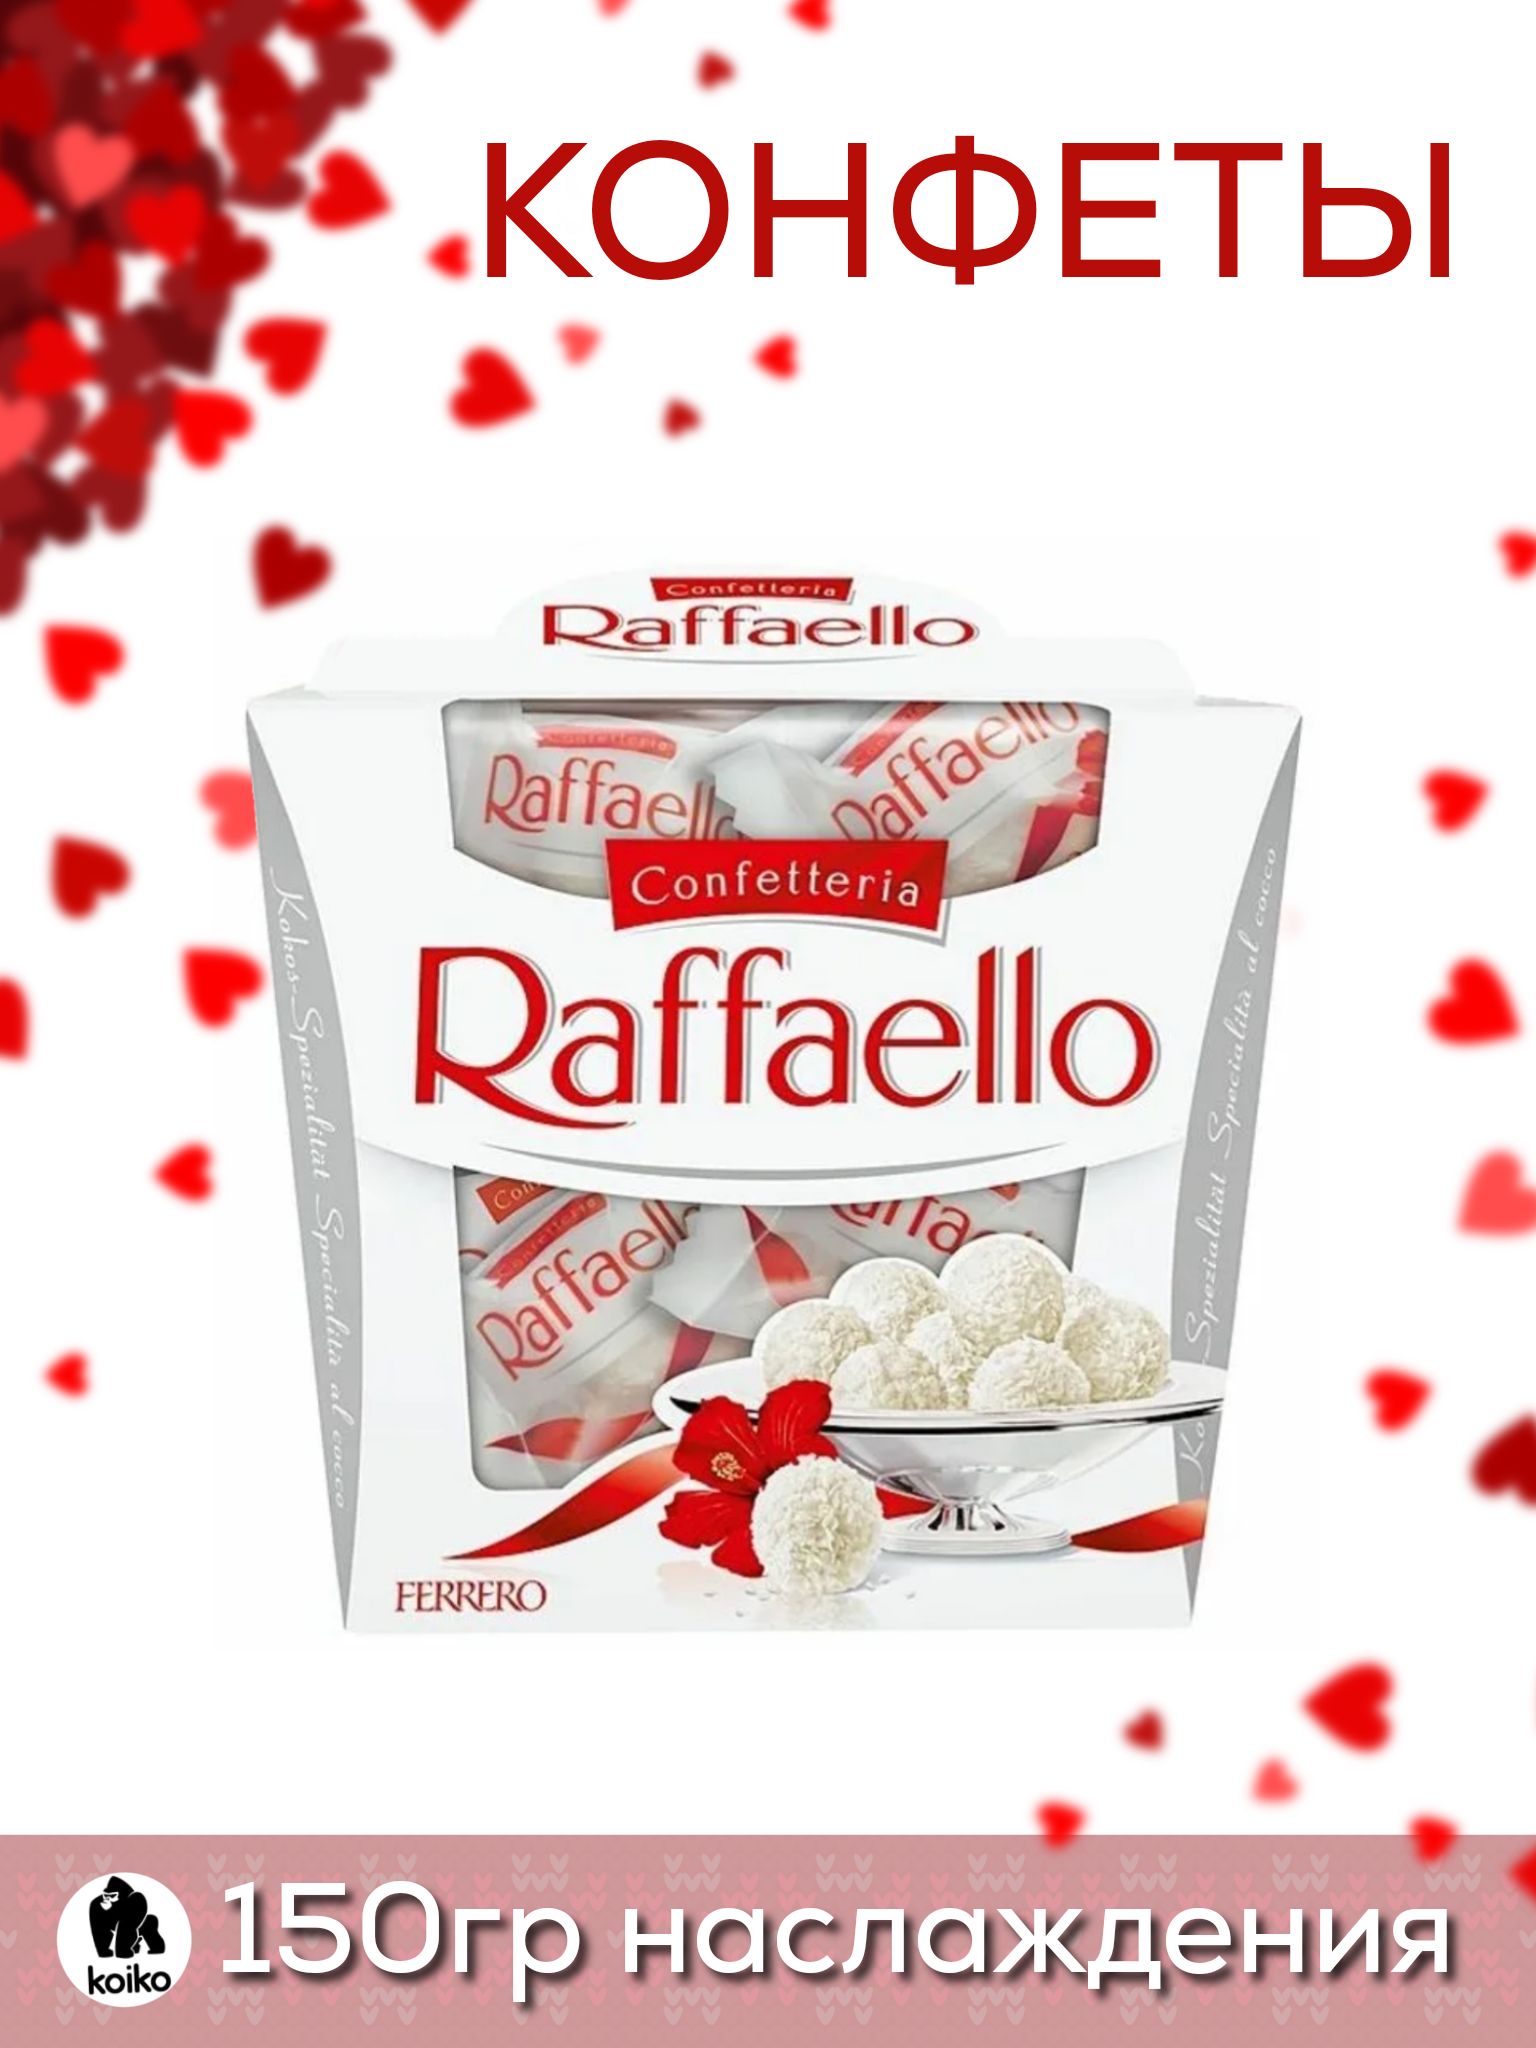 Конфеты Raffaello 150г. Набор конфет Ferrero Raffaello 150г. Рафаэлло конфеты ккал. Сколько штук в коробке Рафаэлло 150 г.